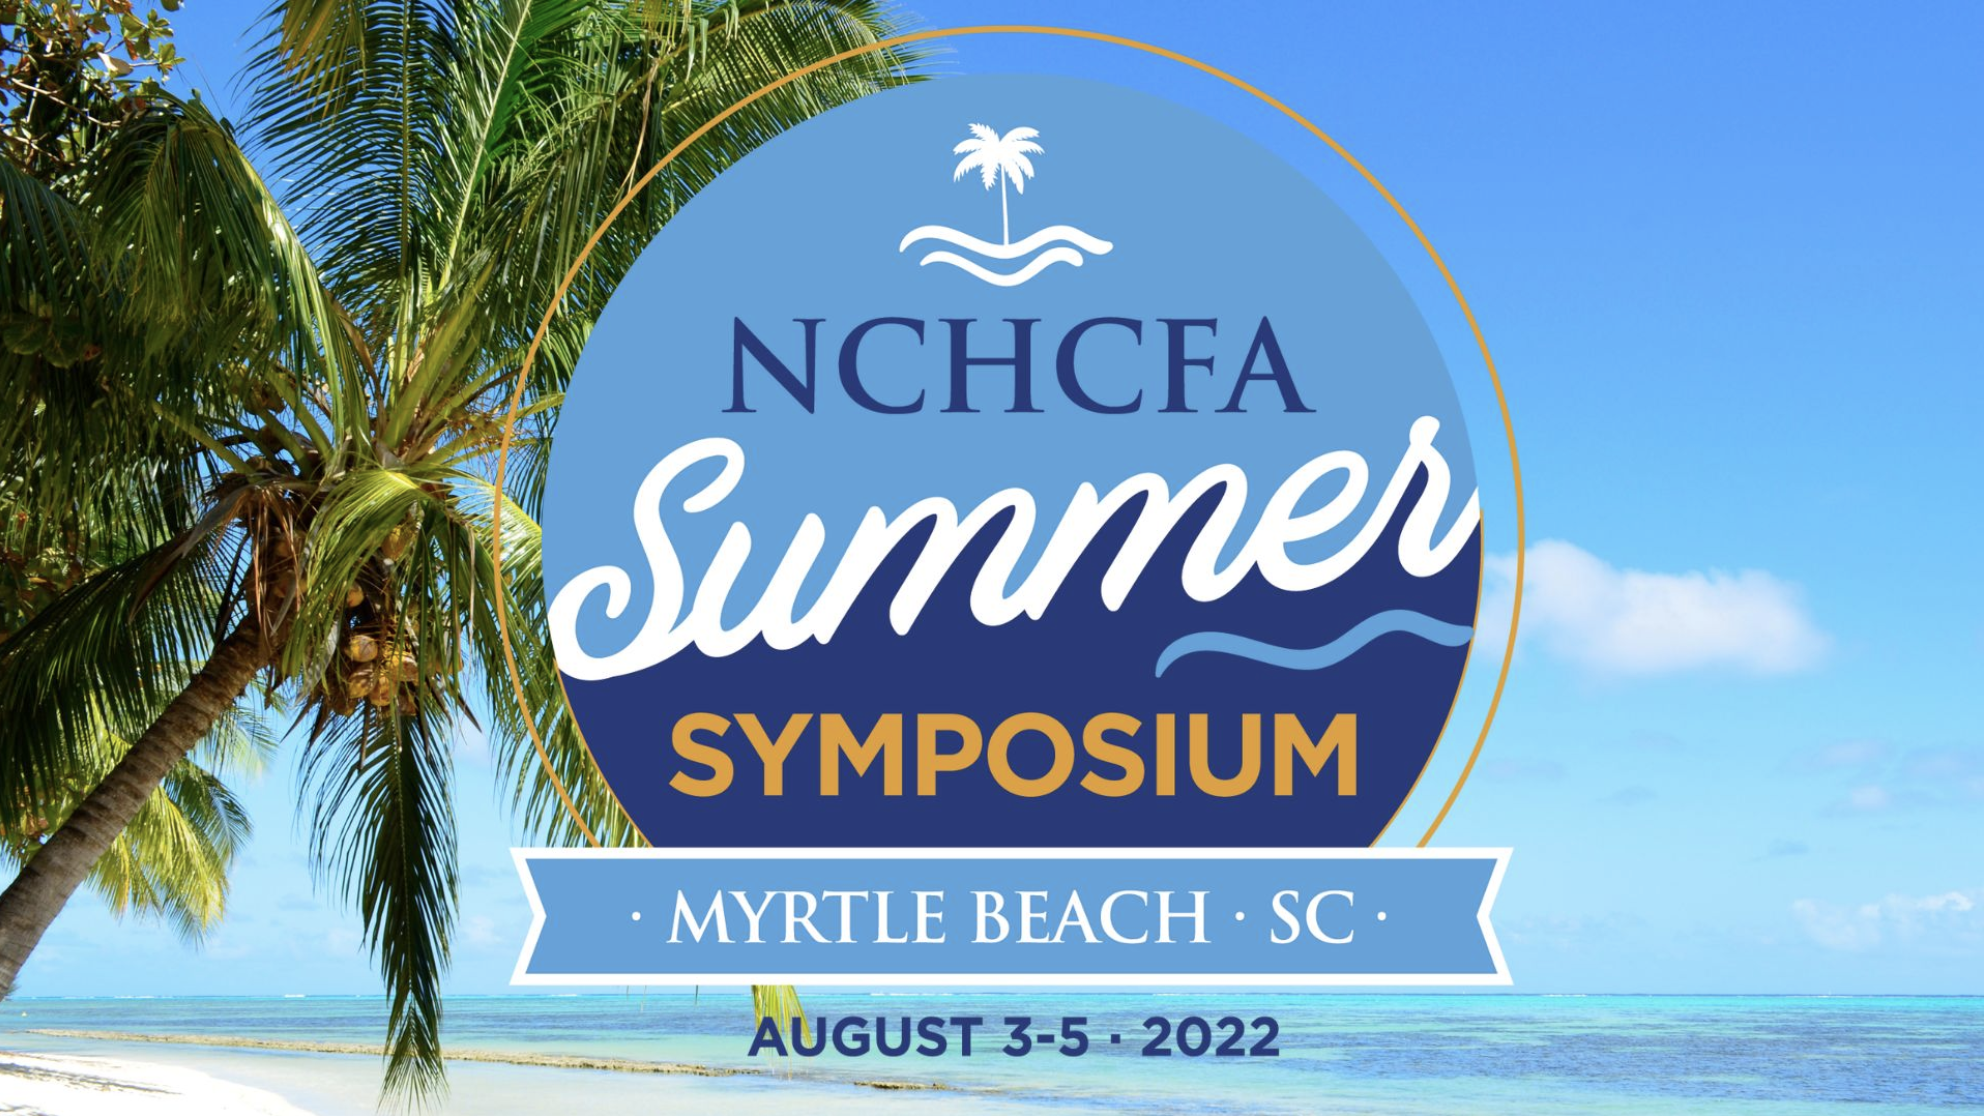 nchcfa-summer-symposium